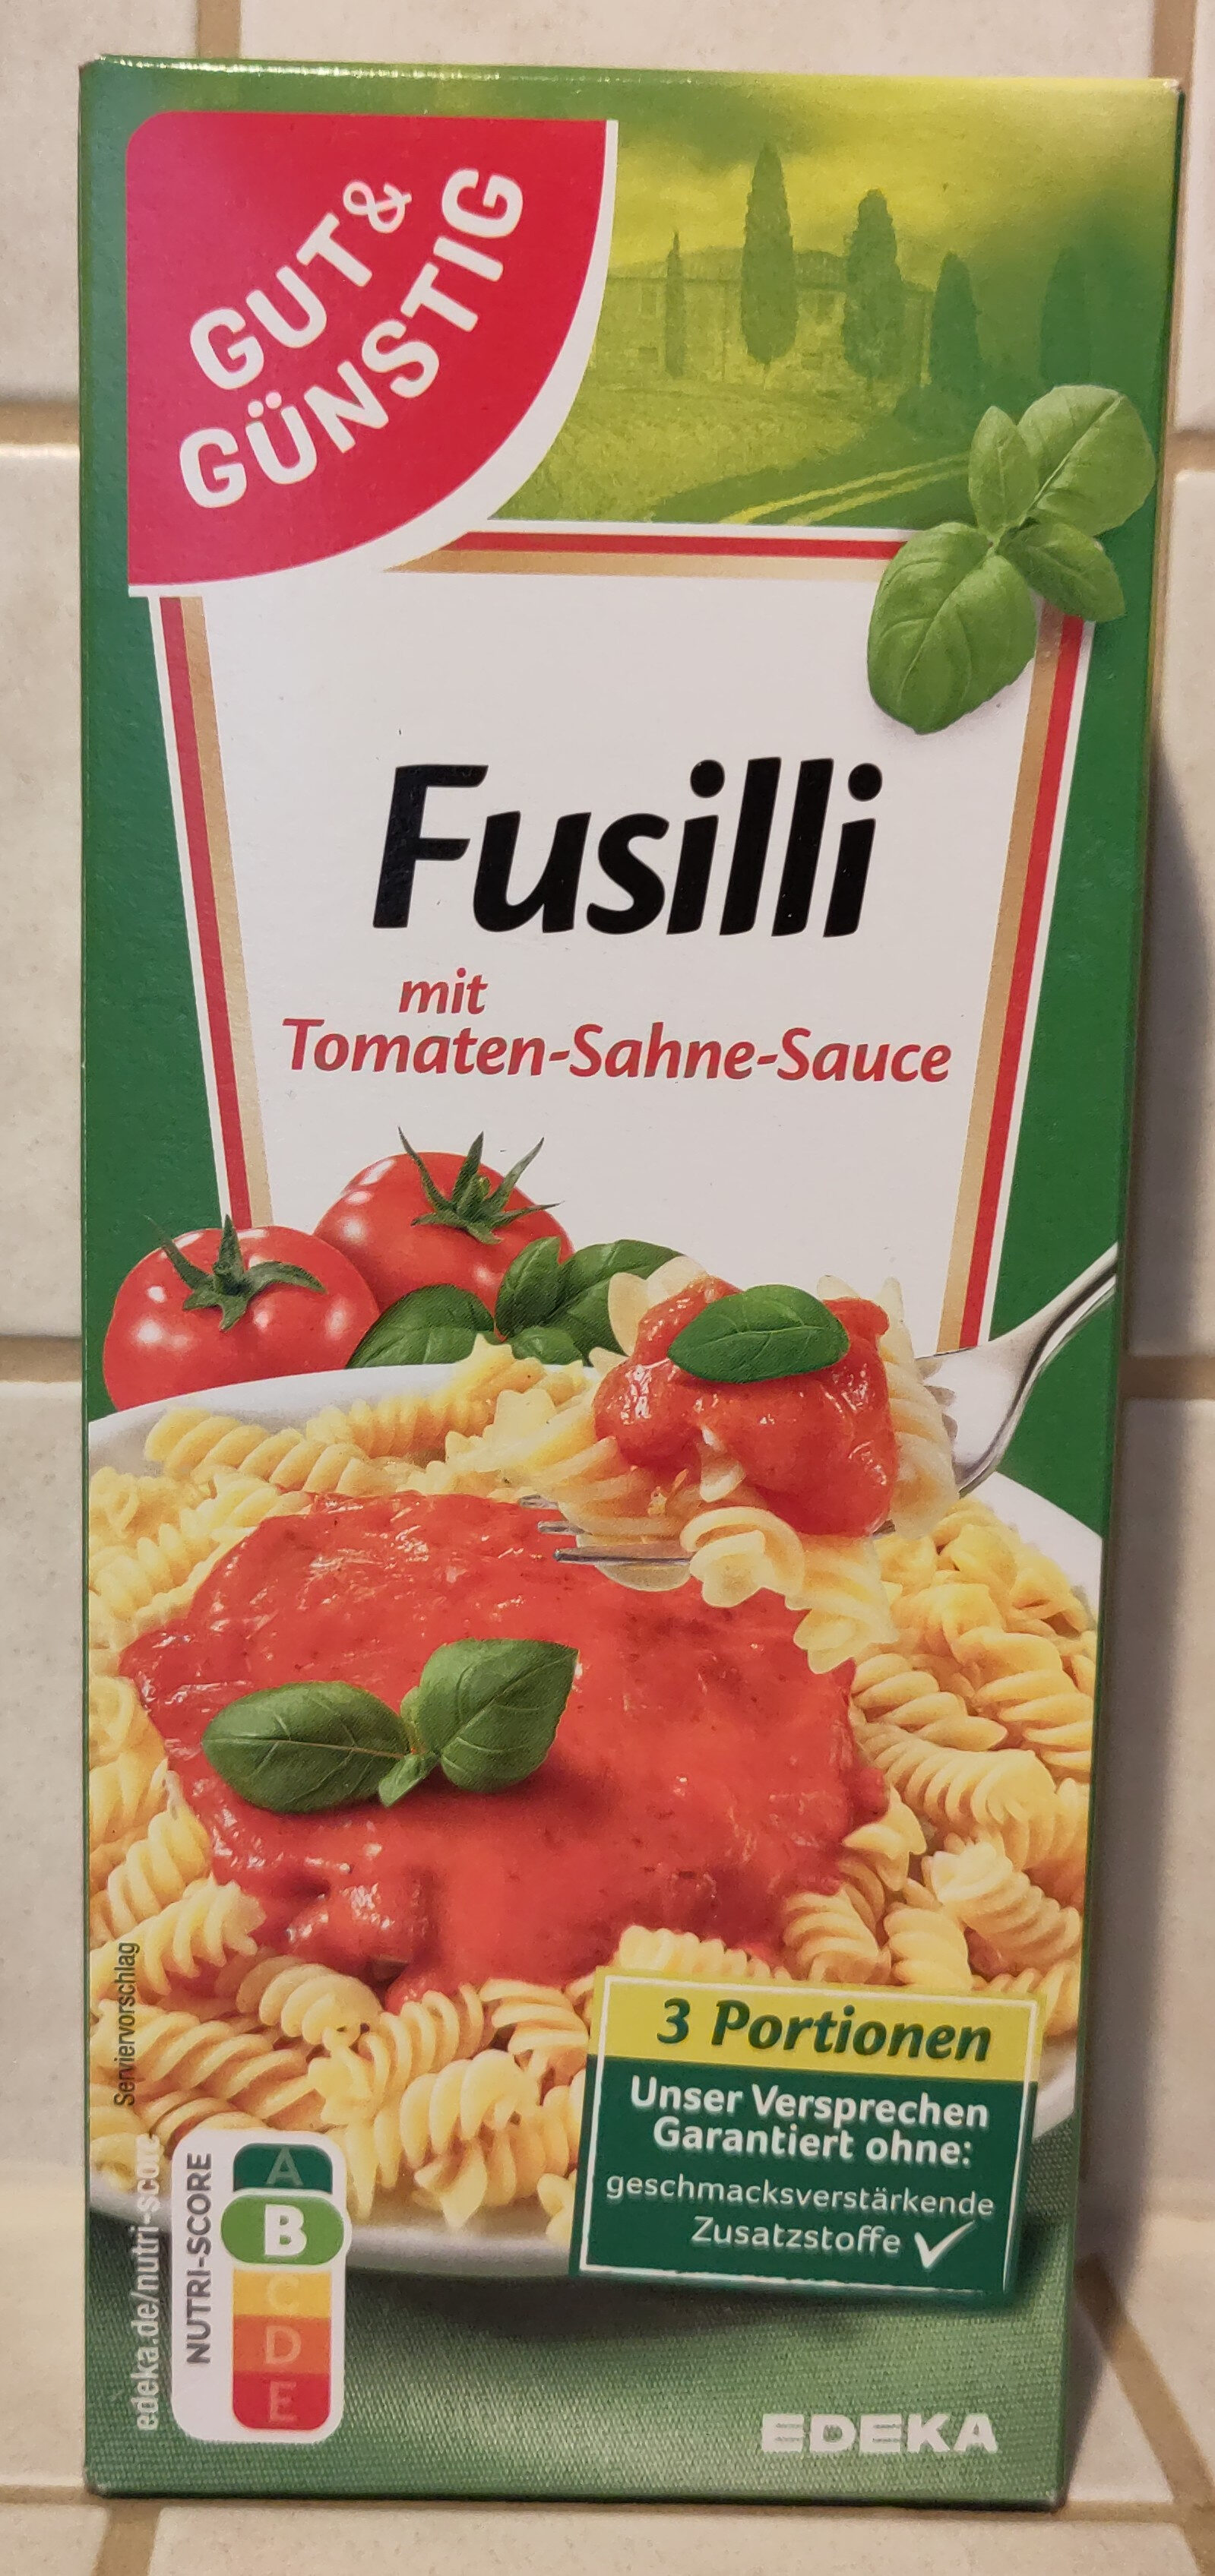 Gut & Günstig Fusilli mit Tomaten-Sahne-Sauce - Produto - de